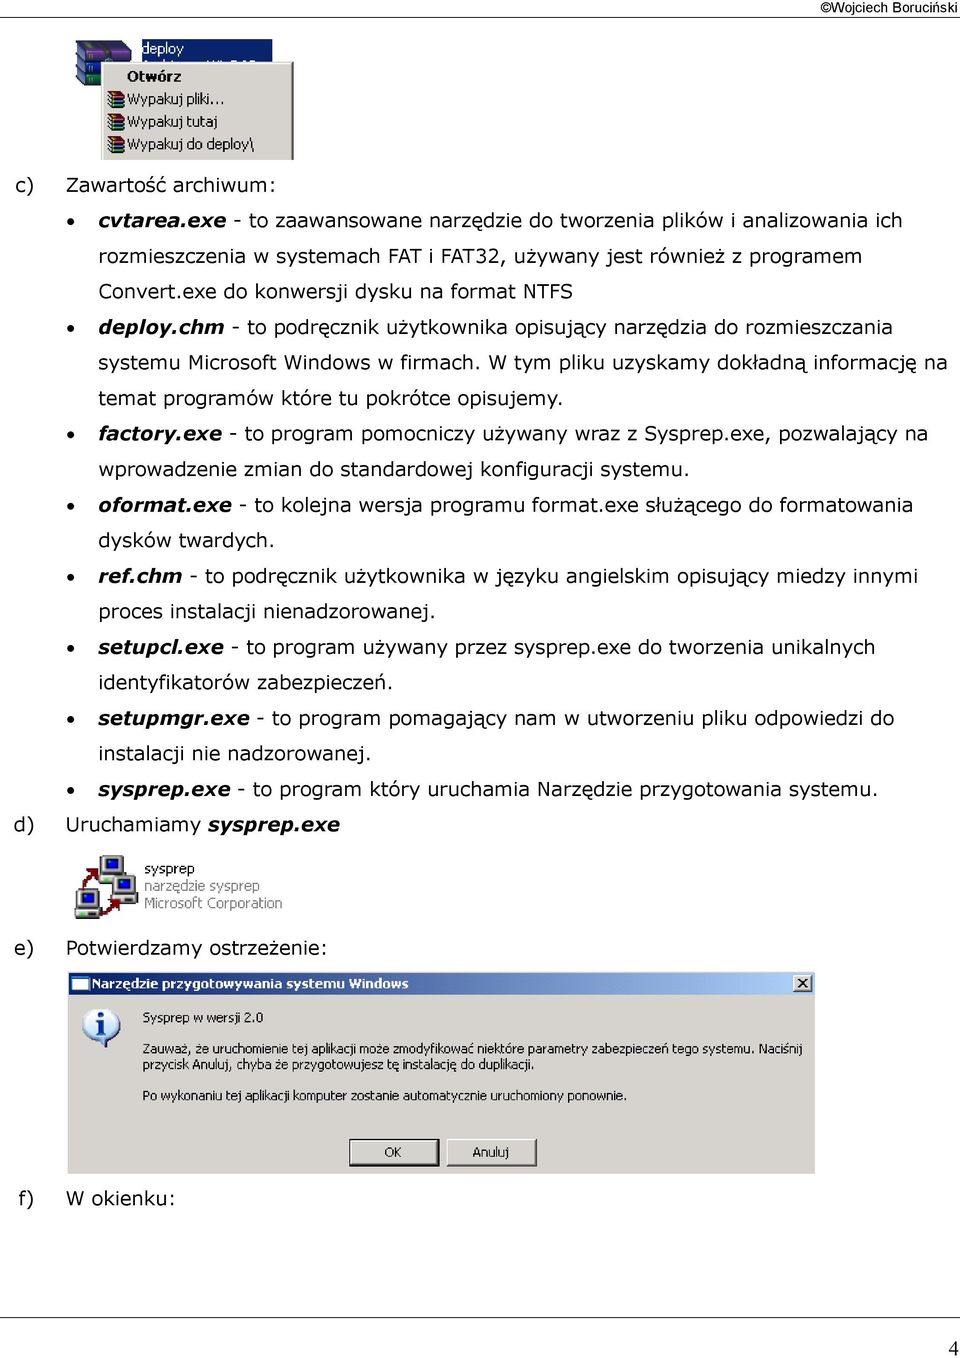 chm - to podręcznik użytkownika opisujący narzędzia do rozmieszczania systemu Microsoft Windows w firmach. W tym pliku uzyskamy dokładną informację na temat programów które tu pokrótce opisujemy.